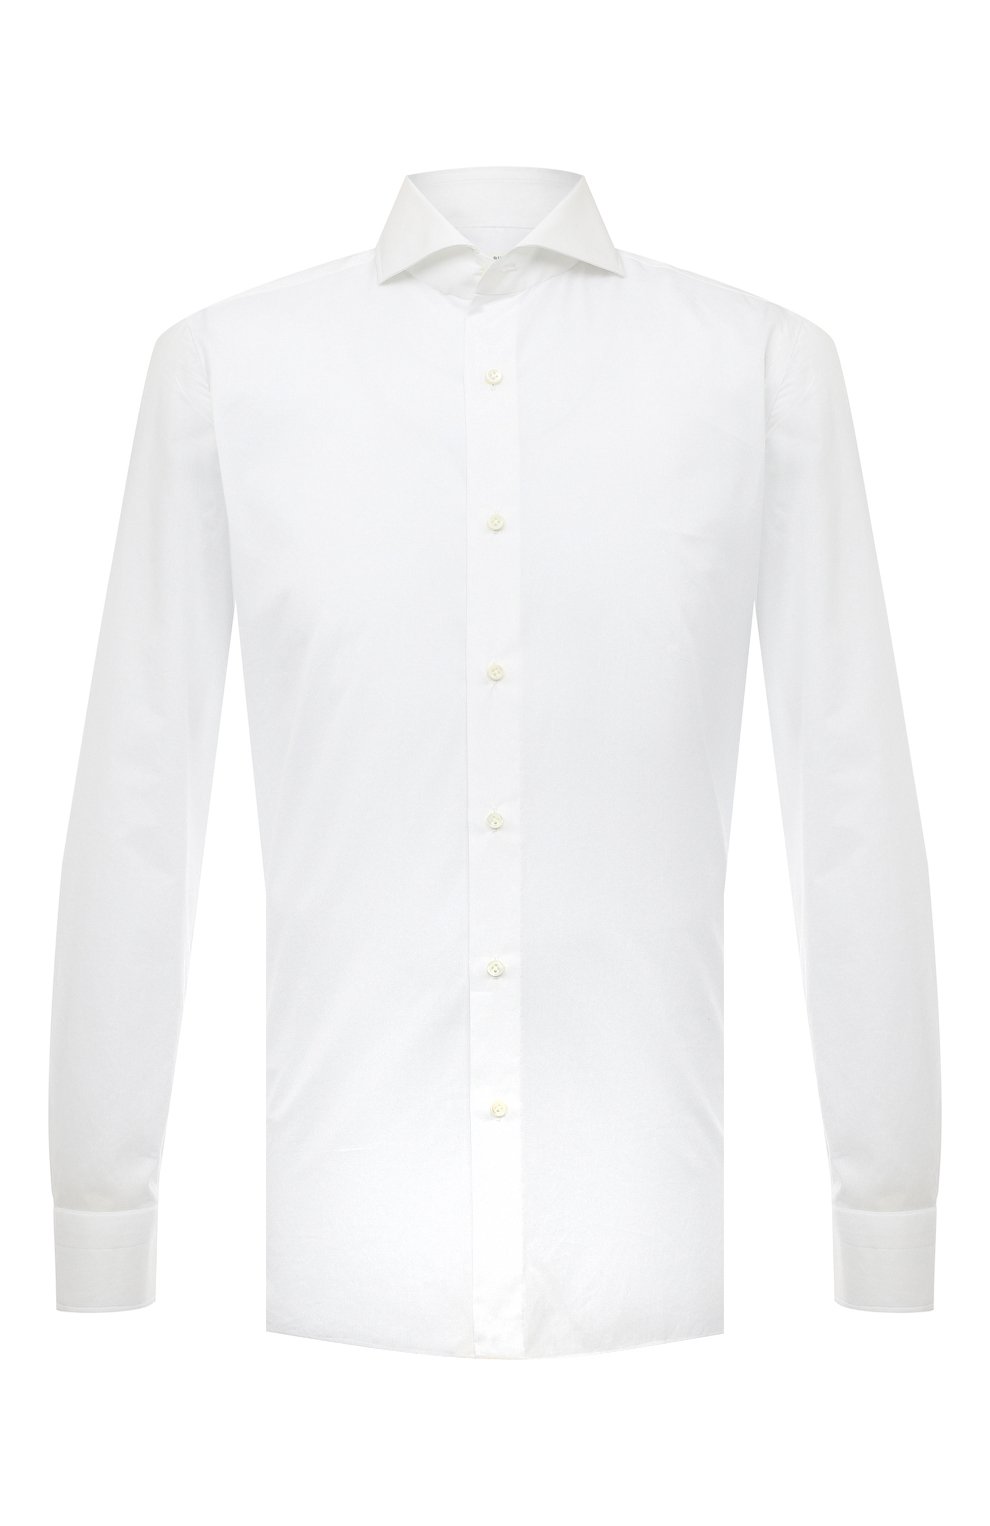 Рубашки Luigi Borrelli, Хлопковая сорочка Luigi Borrelli, Италия, Белый, Хлопок: 100%;, 13367980  - купить